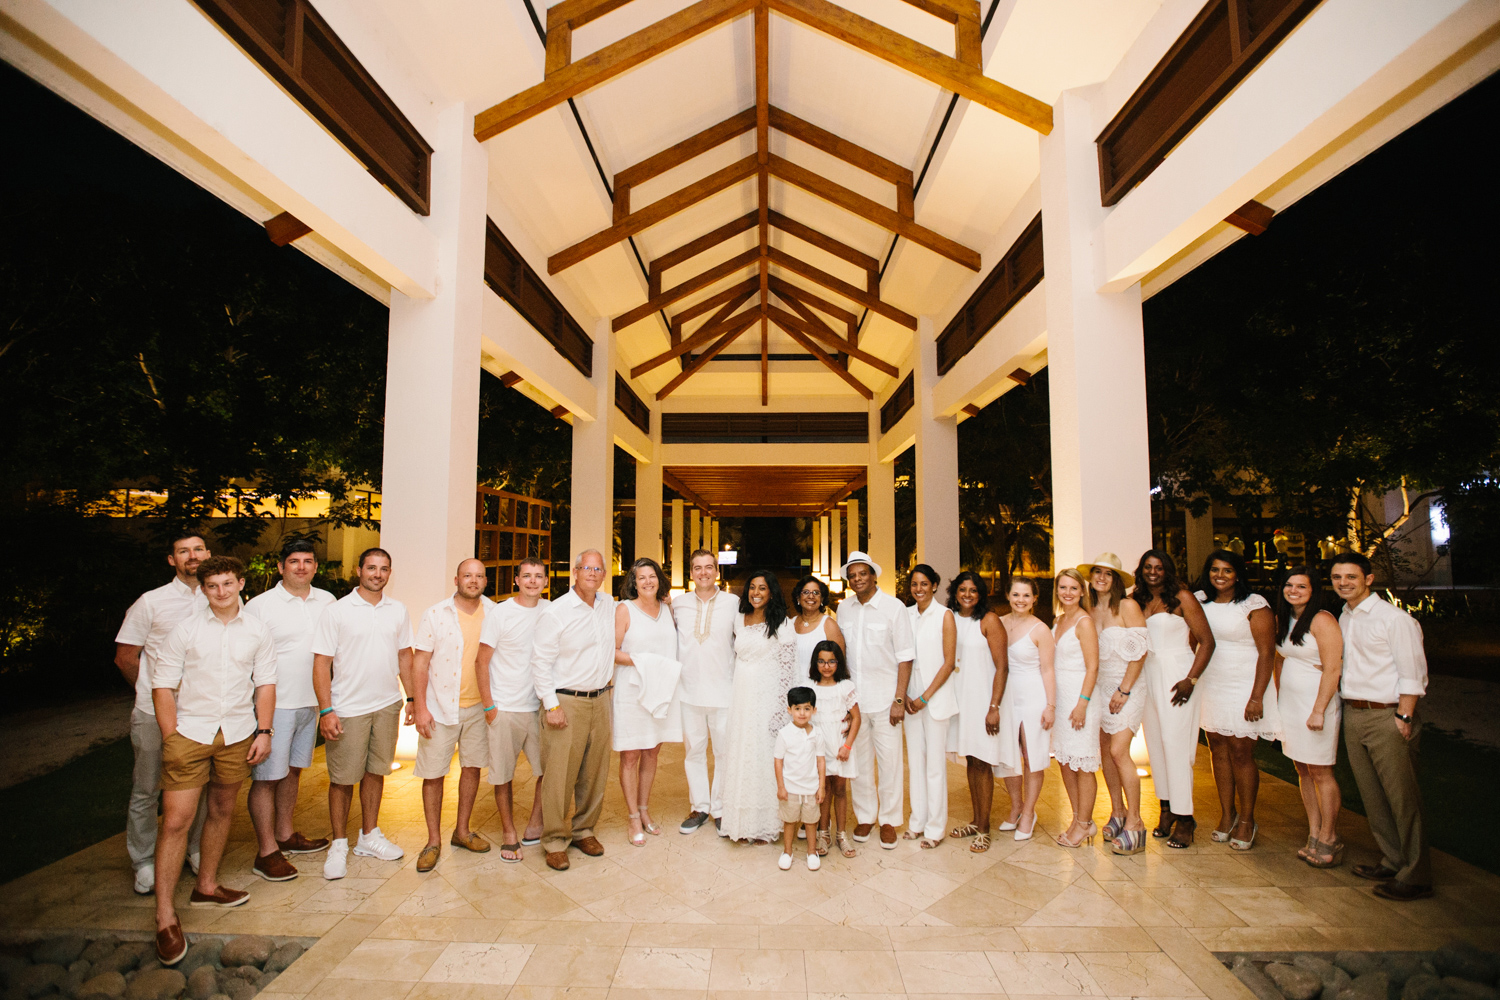 ShanAlex001 Destination Wedding in Costa Rica